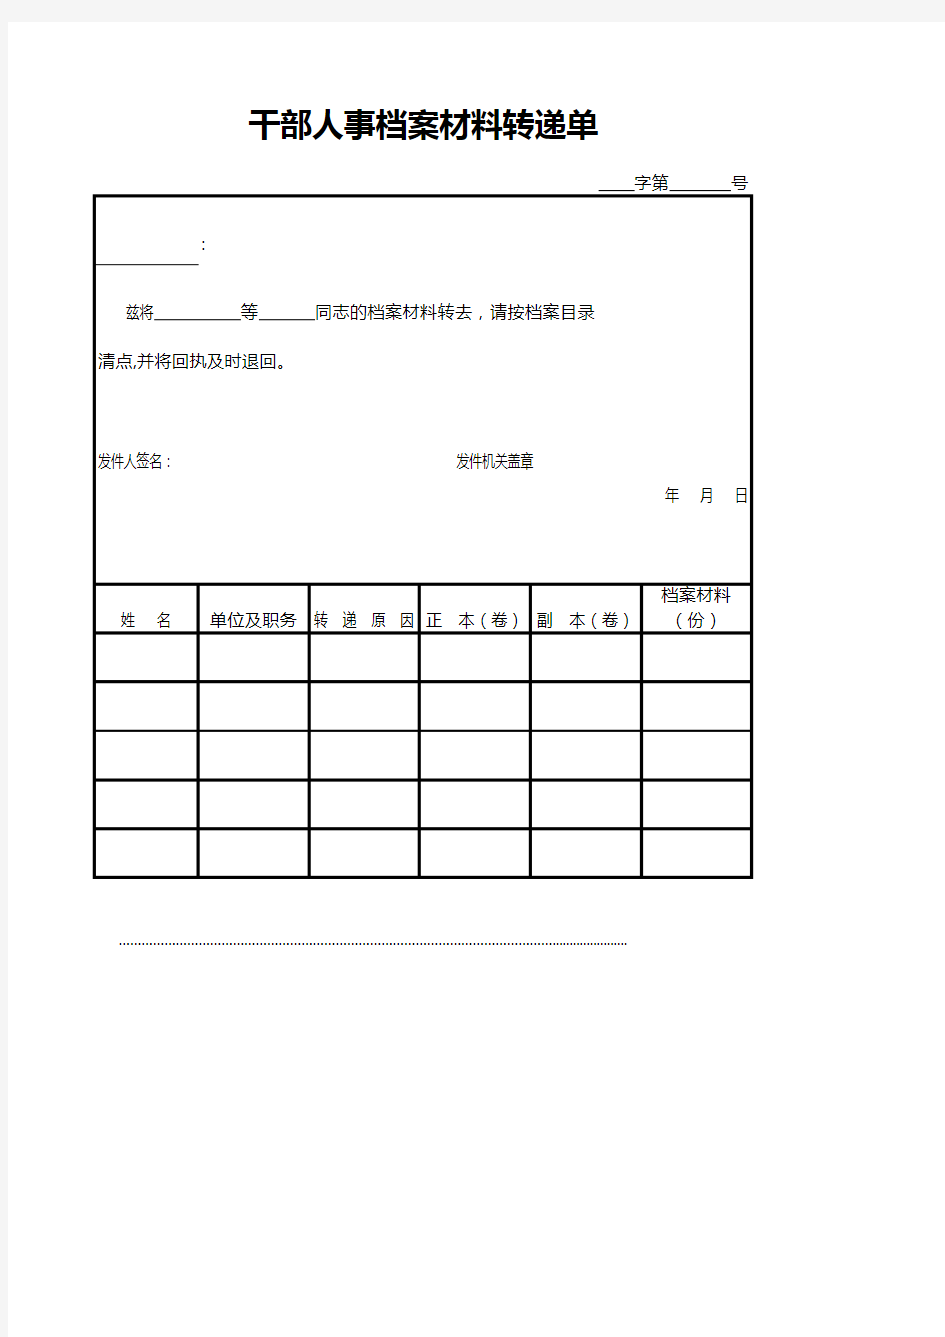 干部人事档案材料转递单(标准模板)